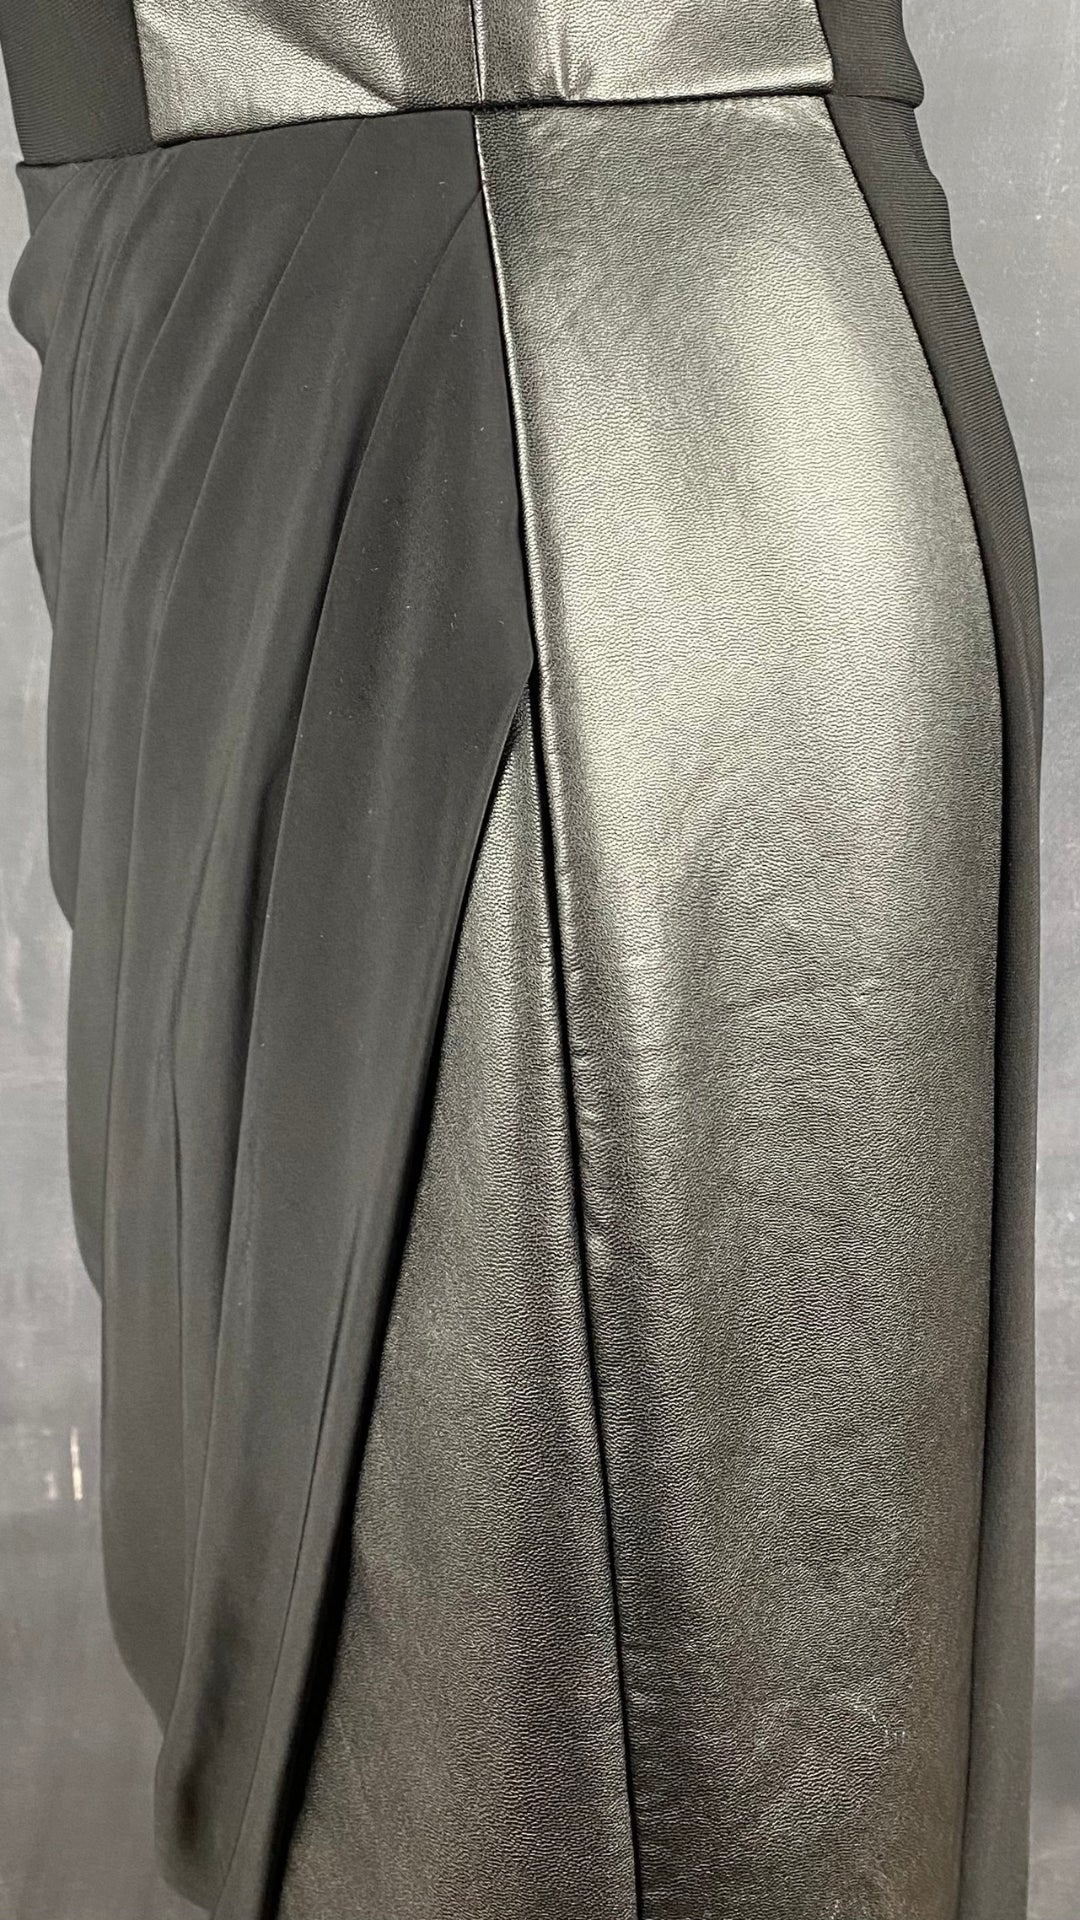 Robe Frank Lyman drapée noire et faux cuir. Vue de près des détails de la jupe.